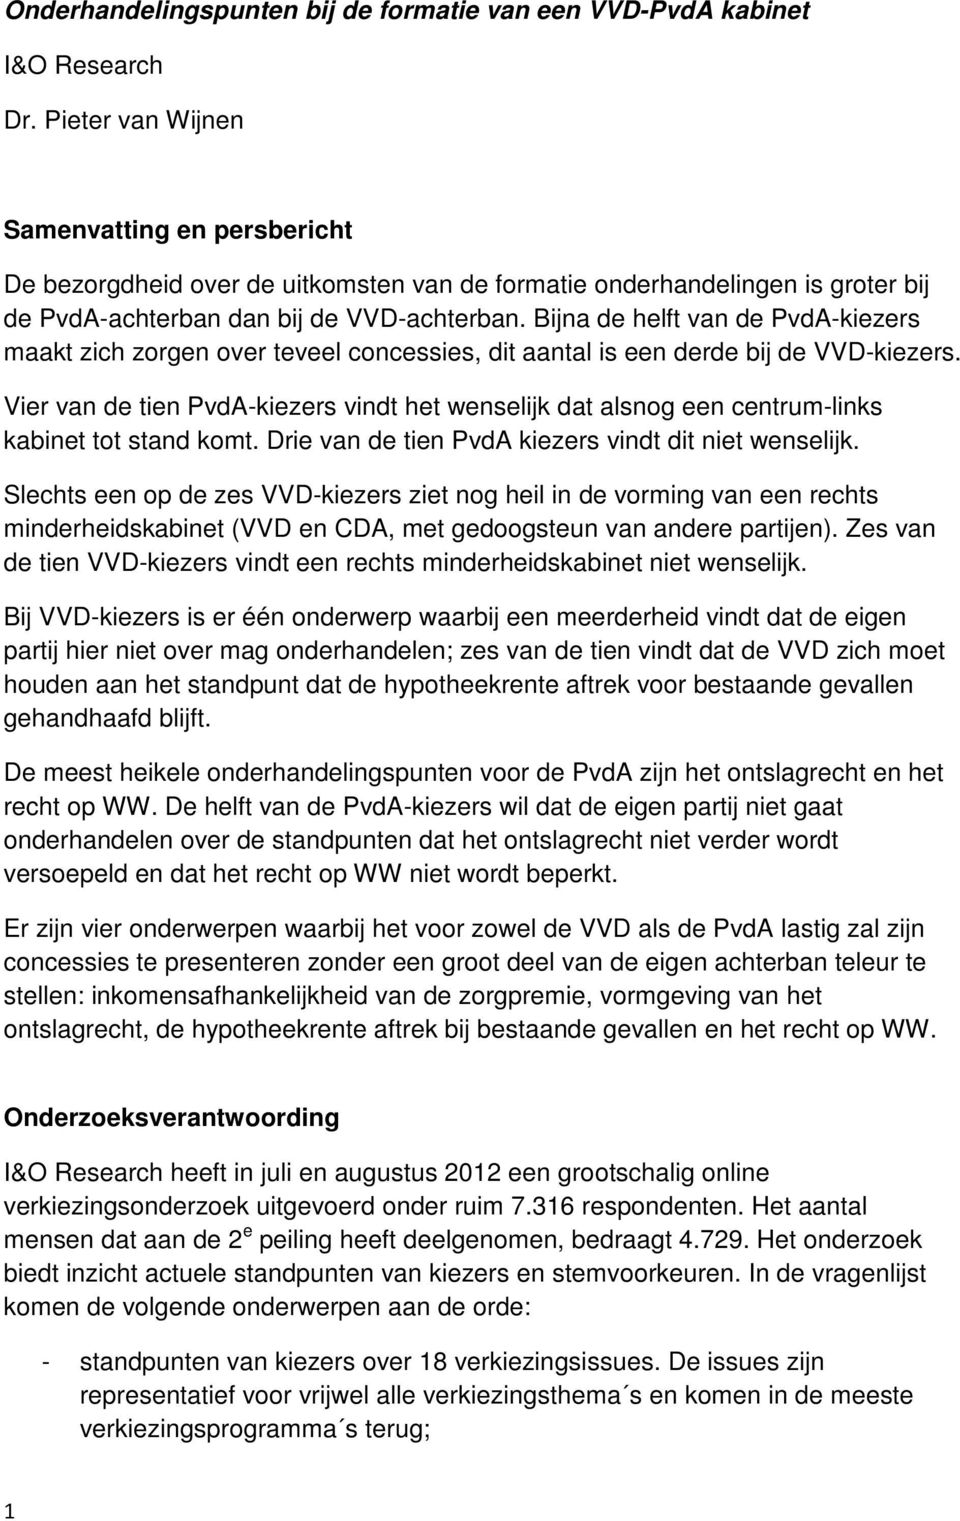 Bijna de helft van de PvdA-kiezers maakt zich zorgen over teveel concessies, dit aantal is een derde bij de VVD-kiezers.